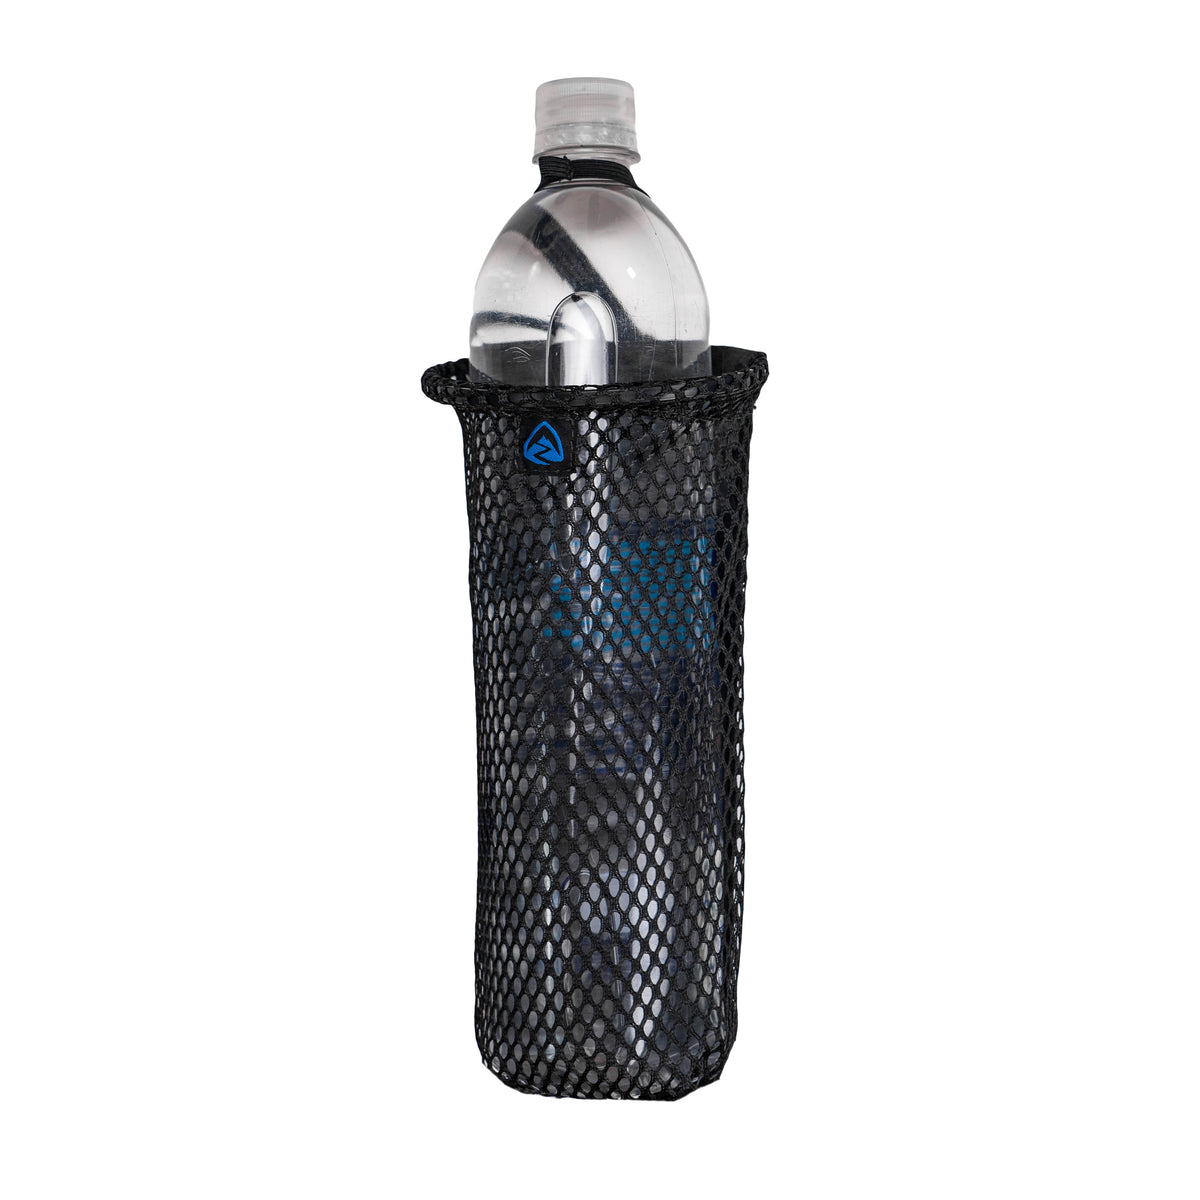 Water Bottle Sleeve